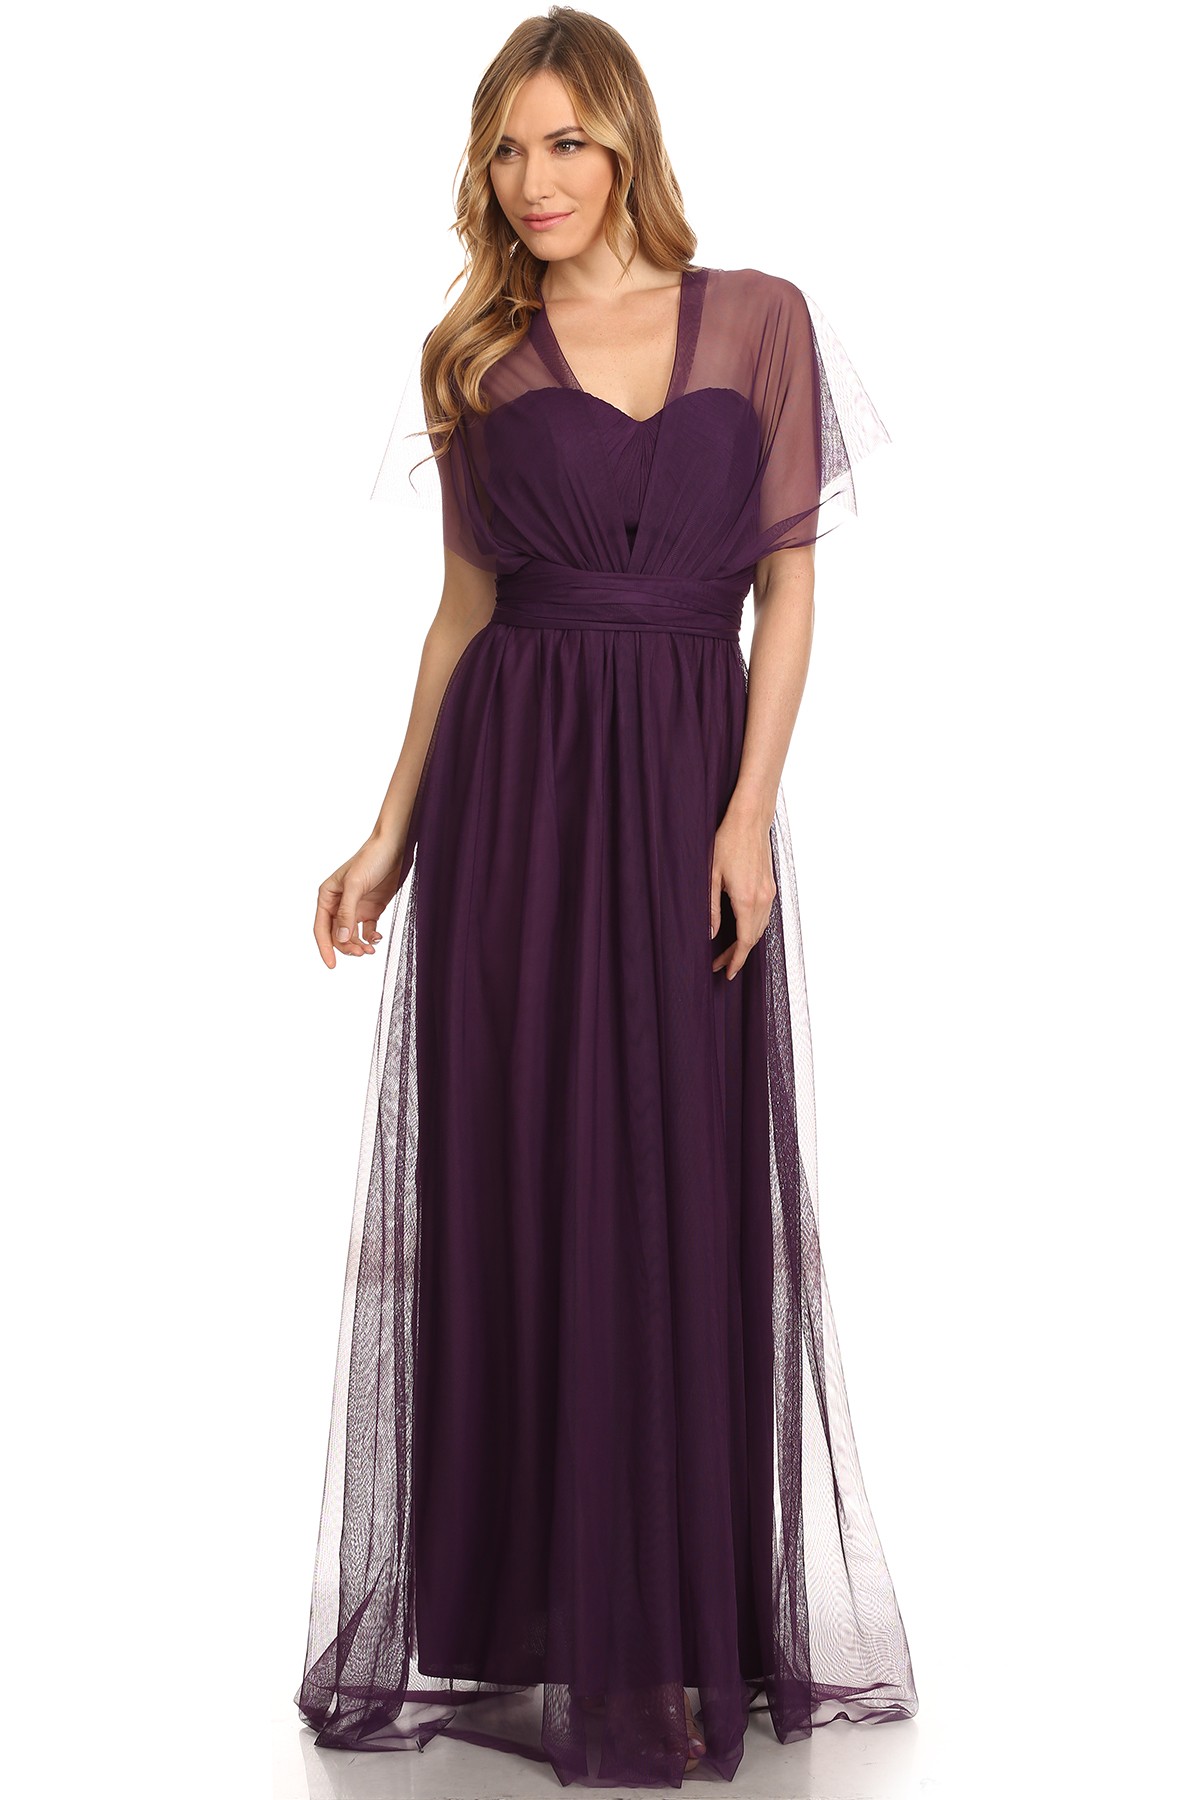 Sarah No 3 Bridesmaid Purple